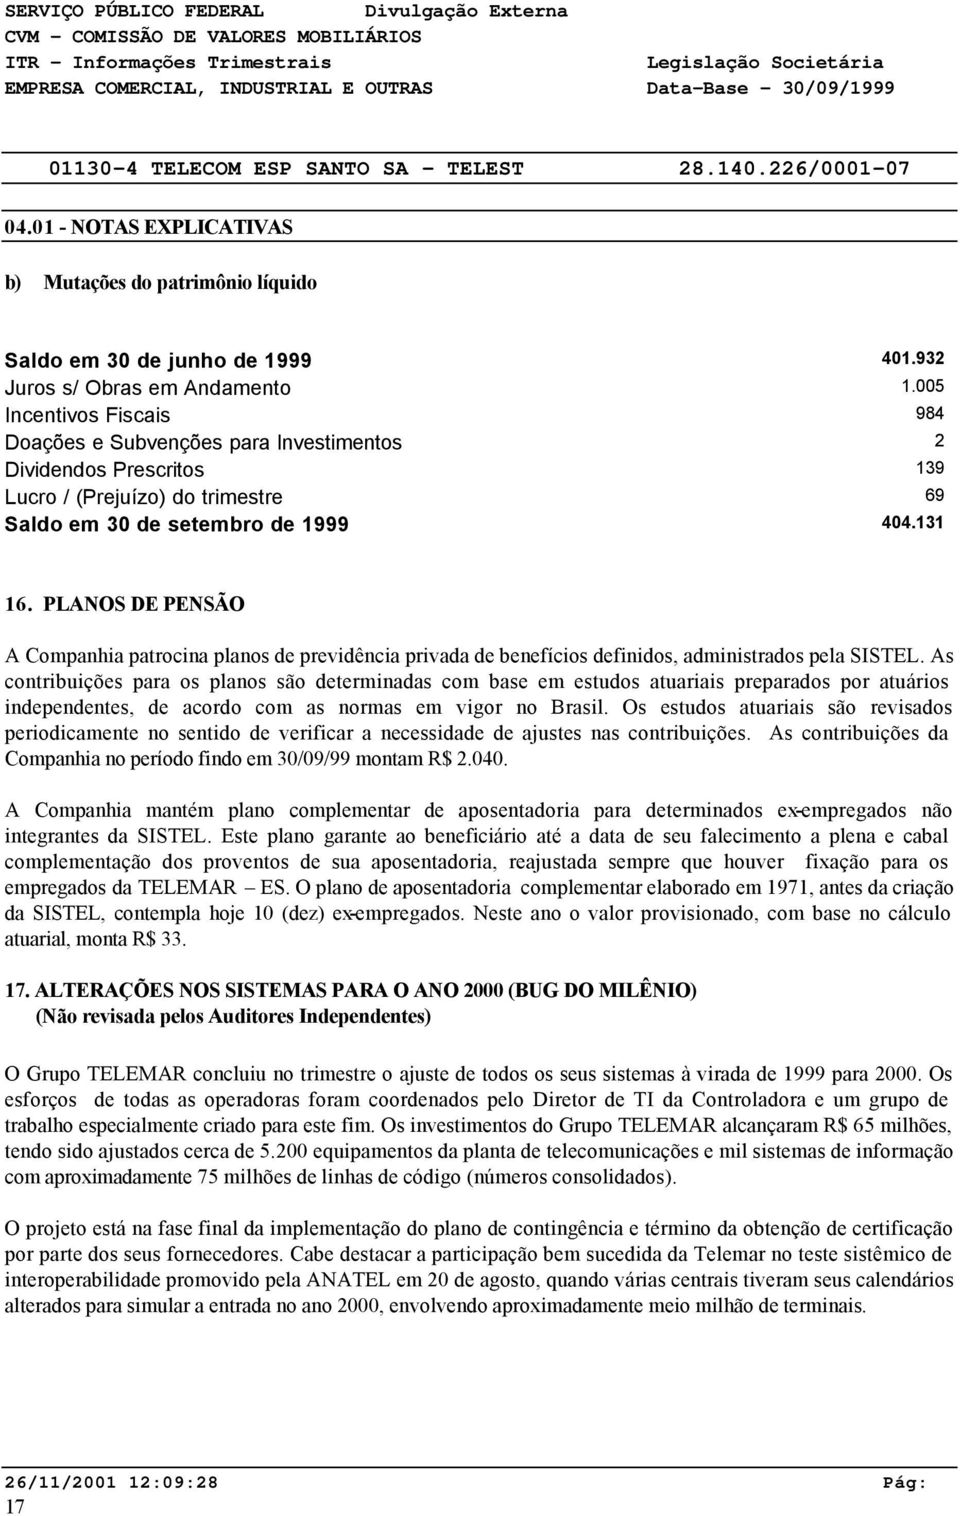 PLANOS DE PENSÃO A Companhia patrocina planos de previdência privada de benefícios definidos, administrados pela SISTEL.